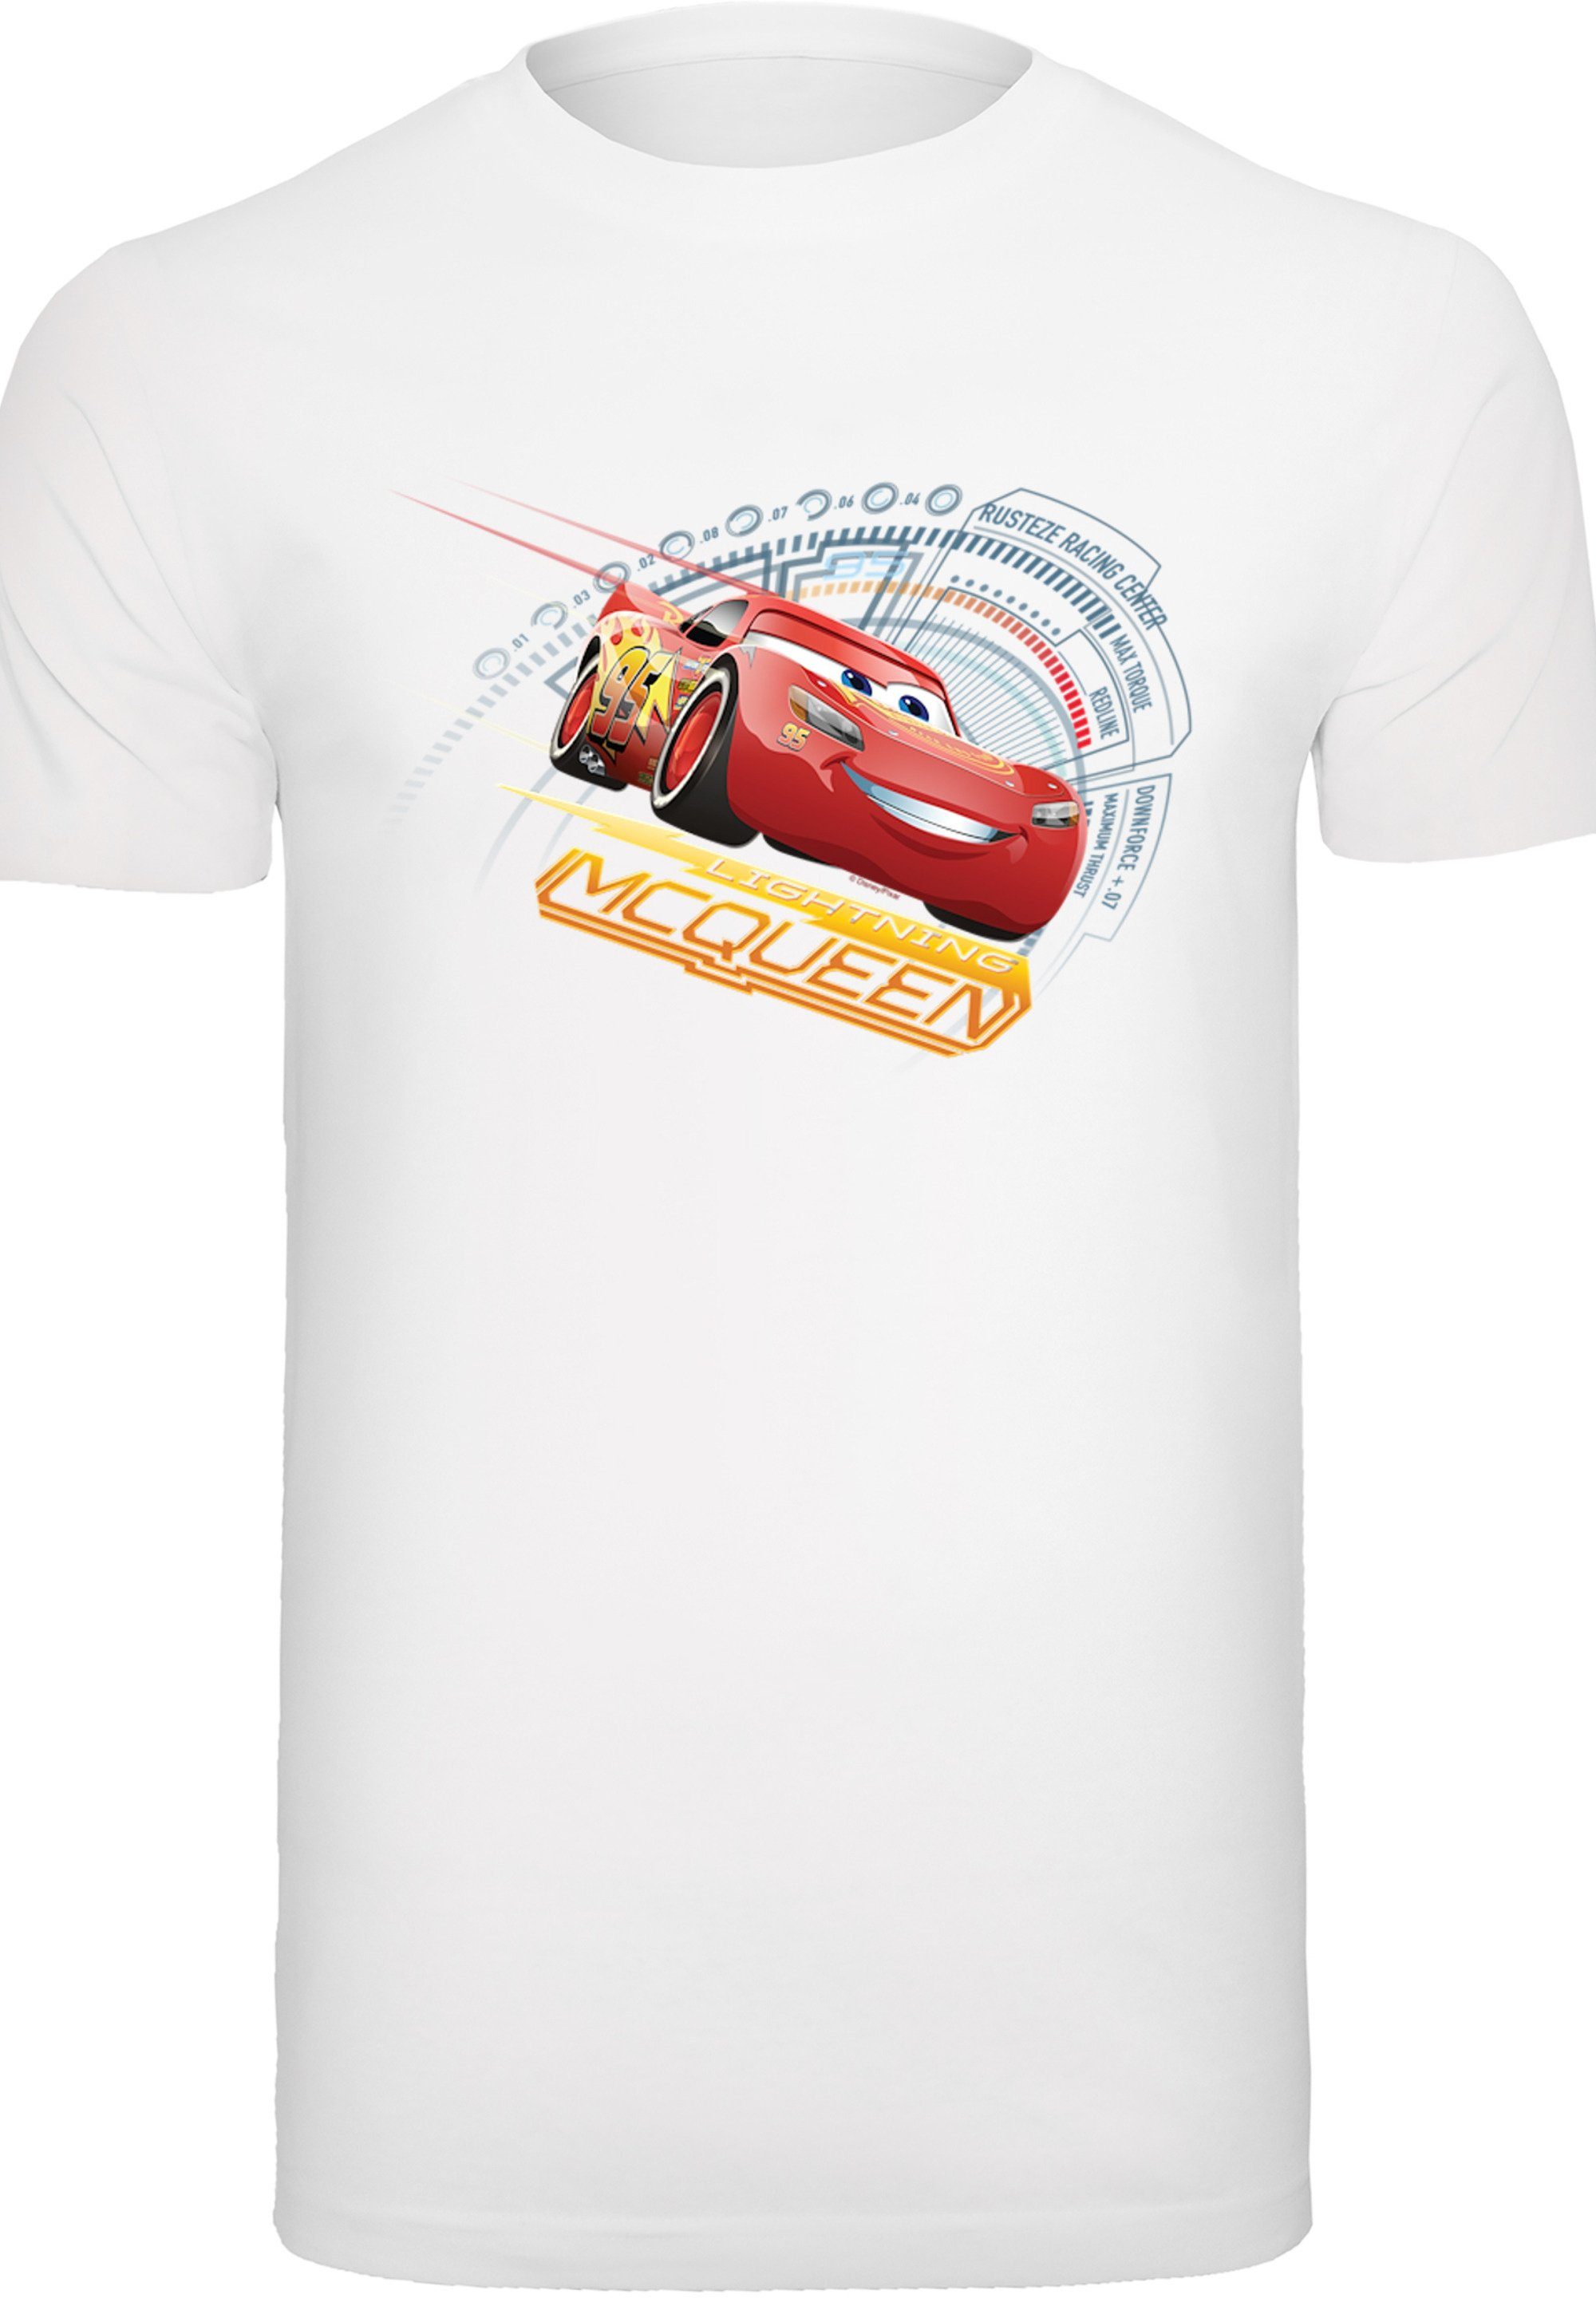 T-Shirt McQueen Disney weiß F4NT4STIC Cars Lightning Herren,Premium Merch,Regular-Fit,Basic,Bedruckt